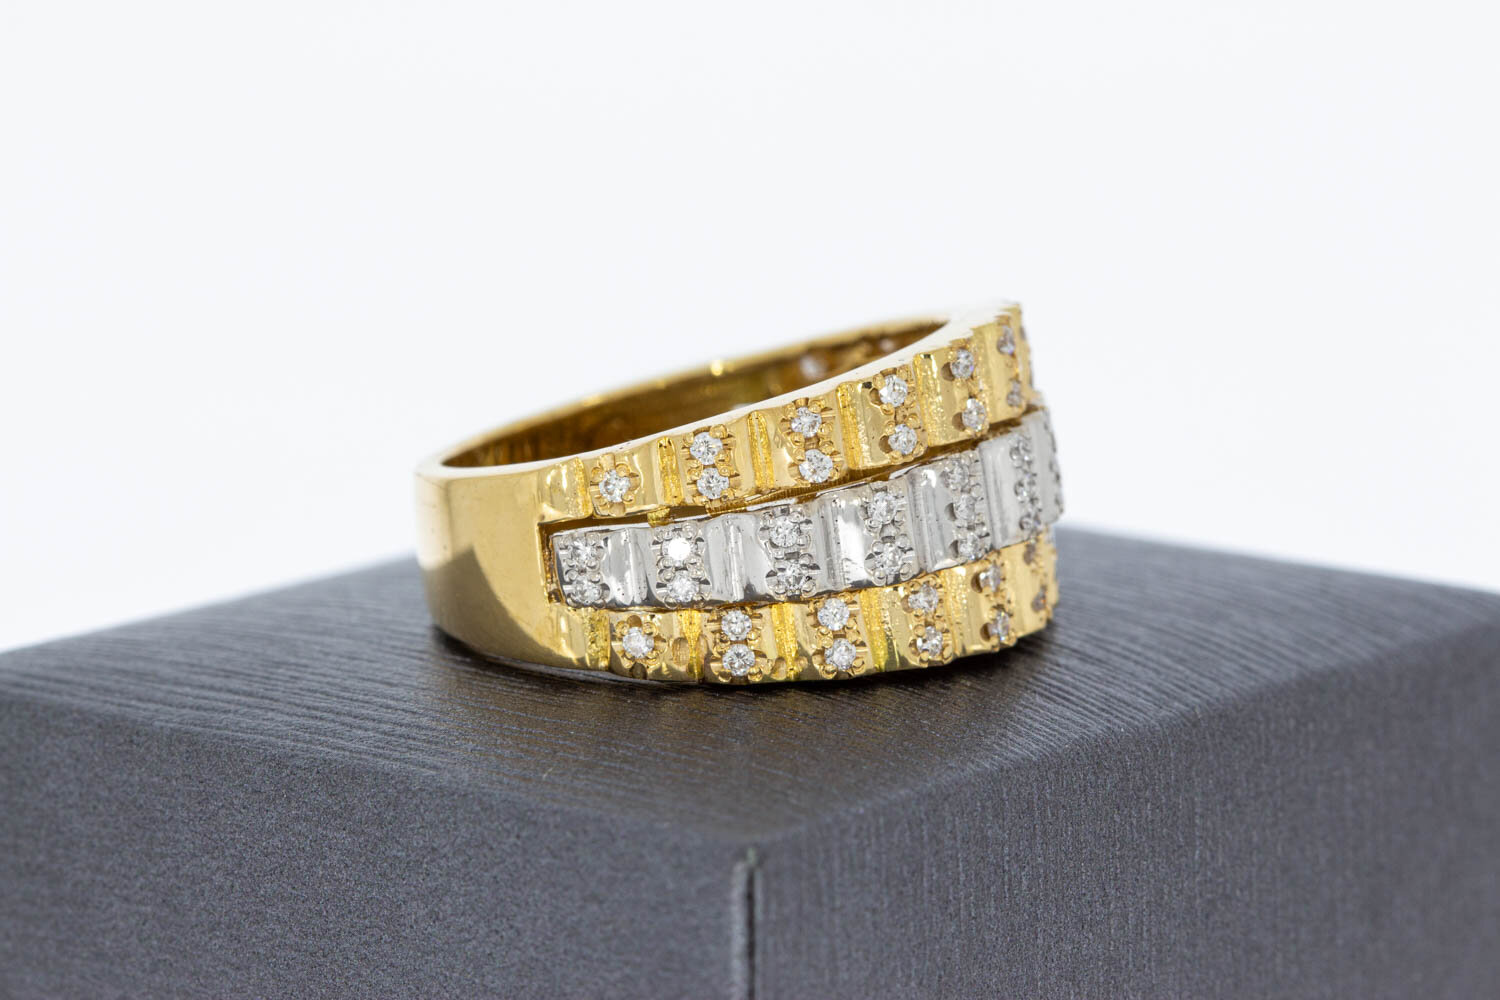 750 Goldene Ring im Rolex-Stil - 21 mm